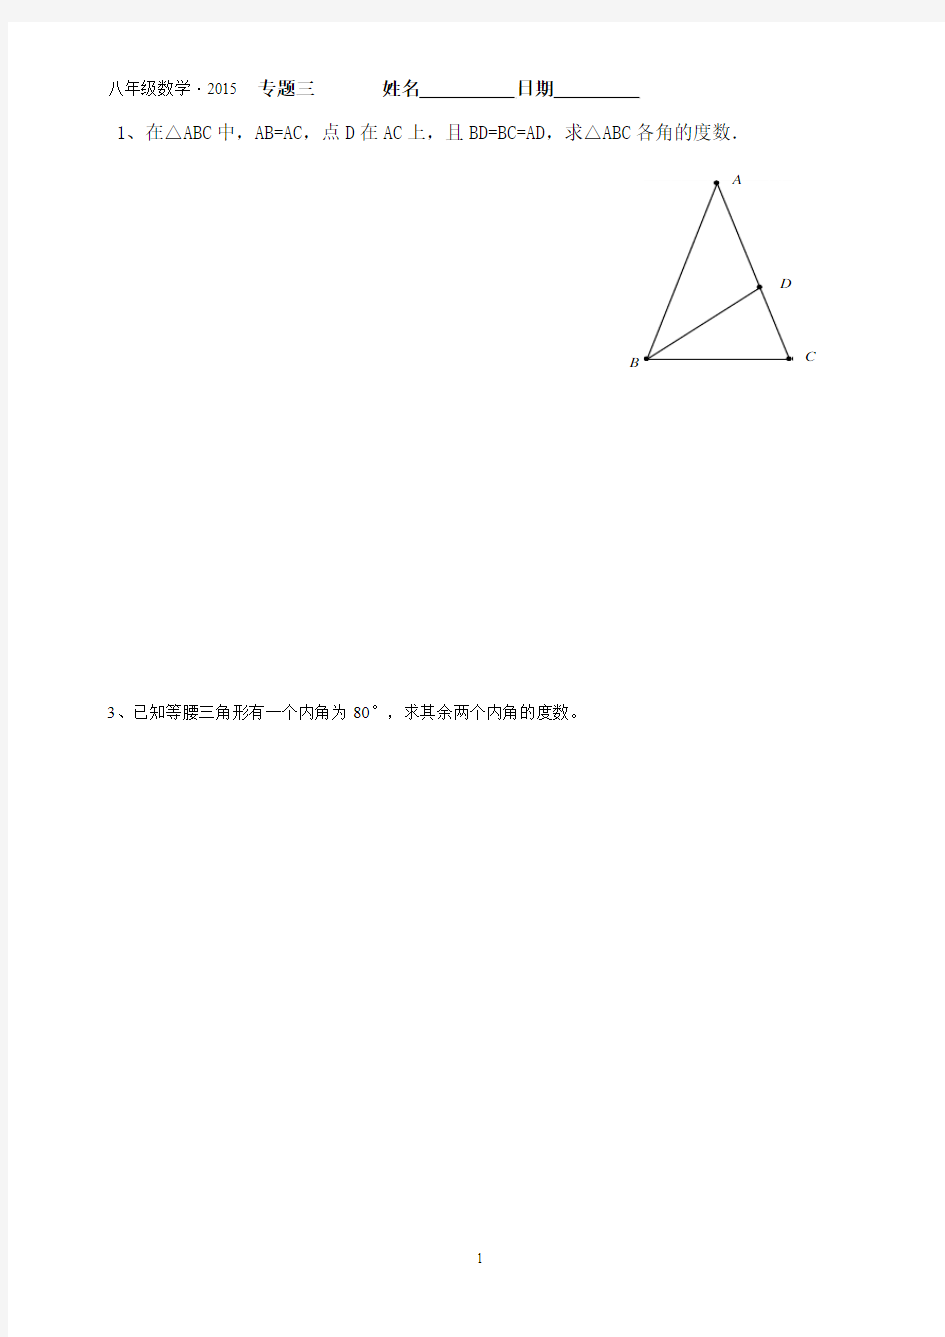 新人教版初二数学上册 八年级 学案 第13章求周长,等腰三角形的性质